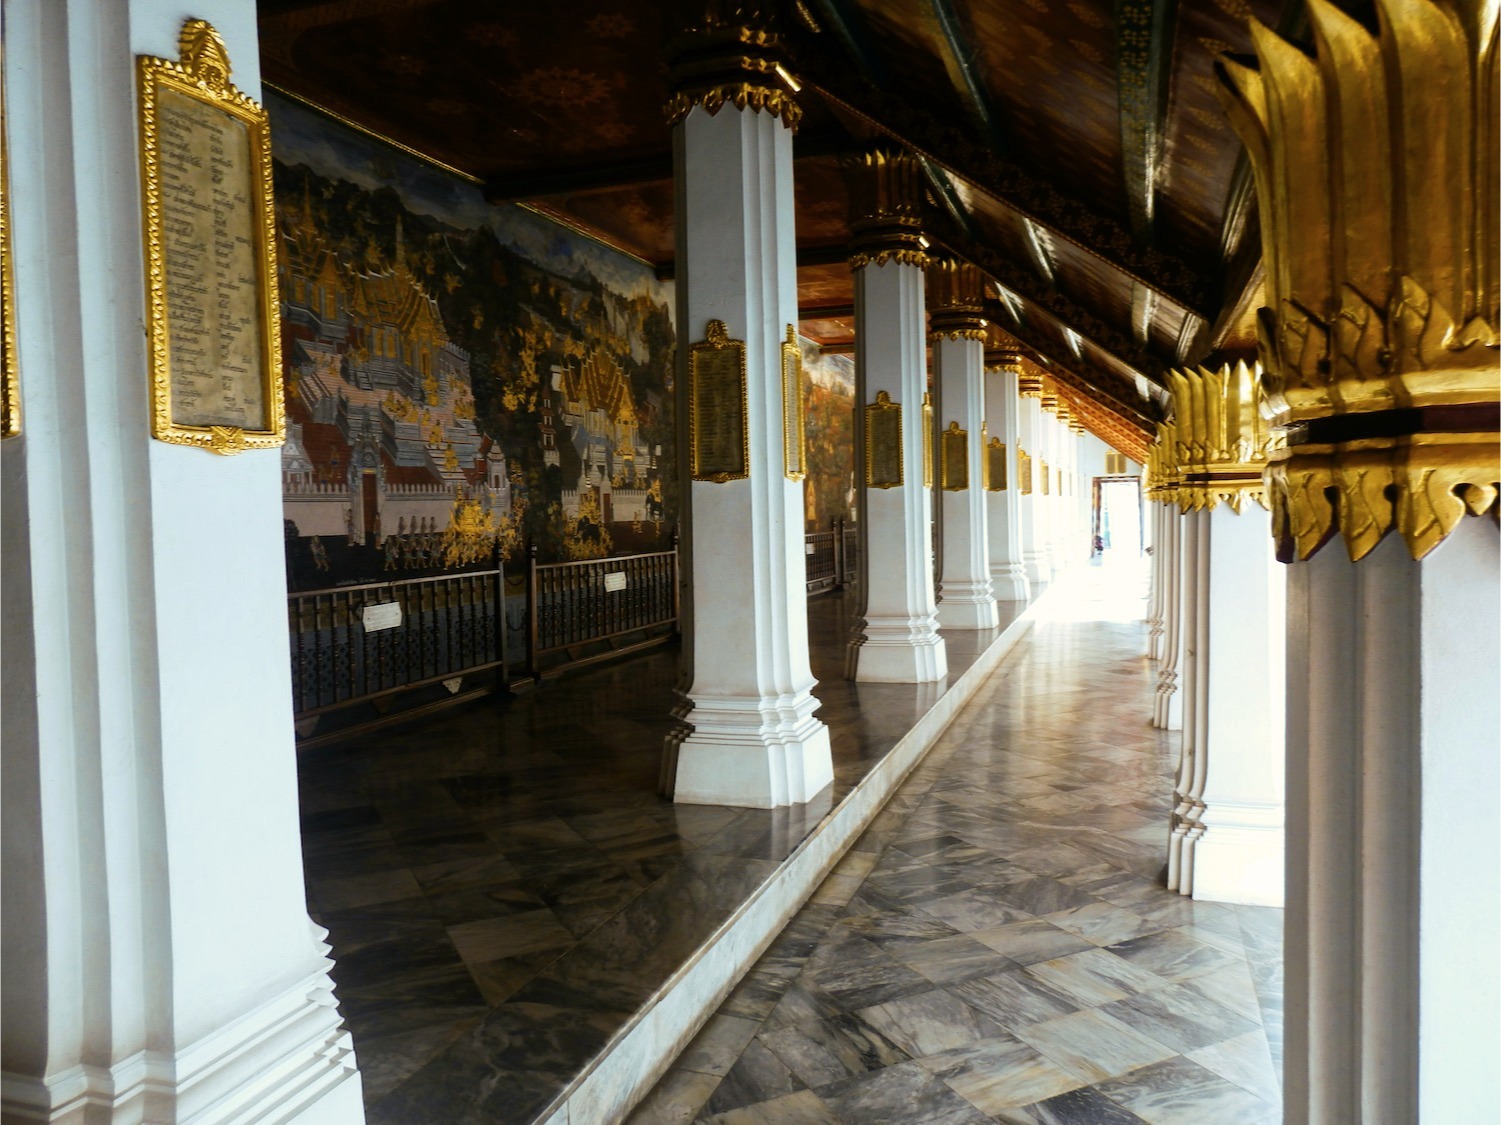 Königspalast in Bangkok